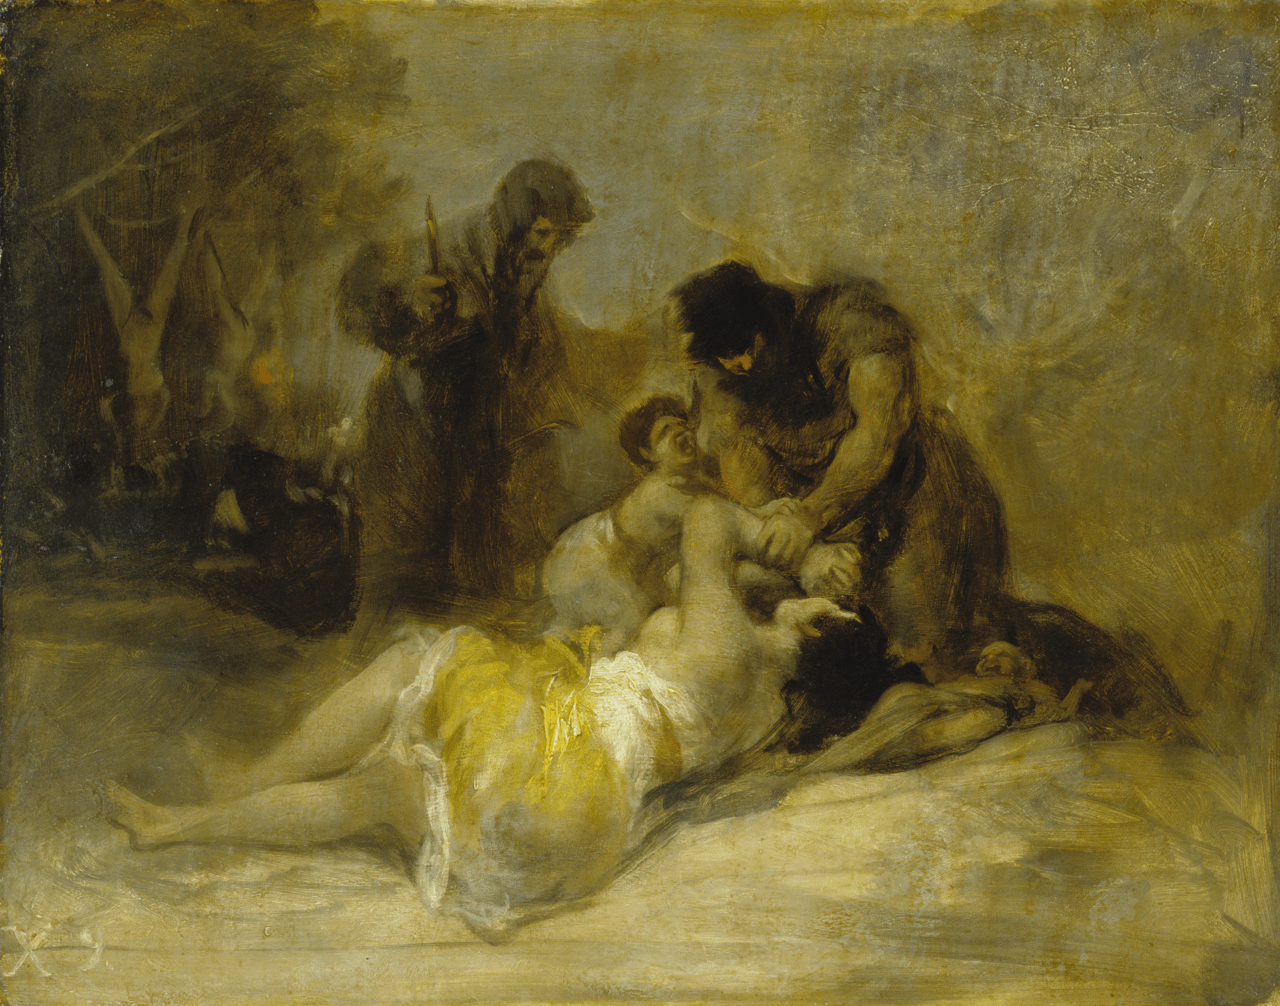 Útok na ženu, Francisco de Goya, Städel Museum